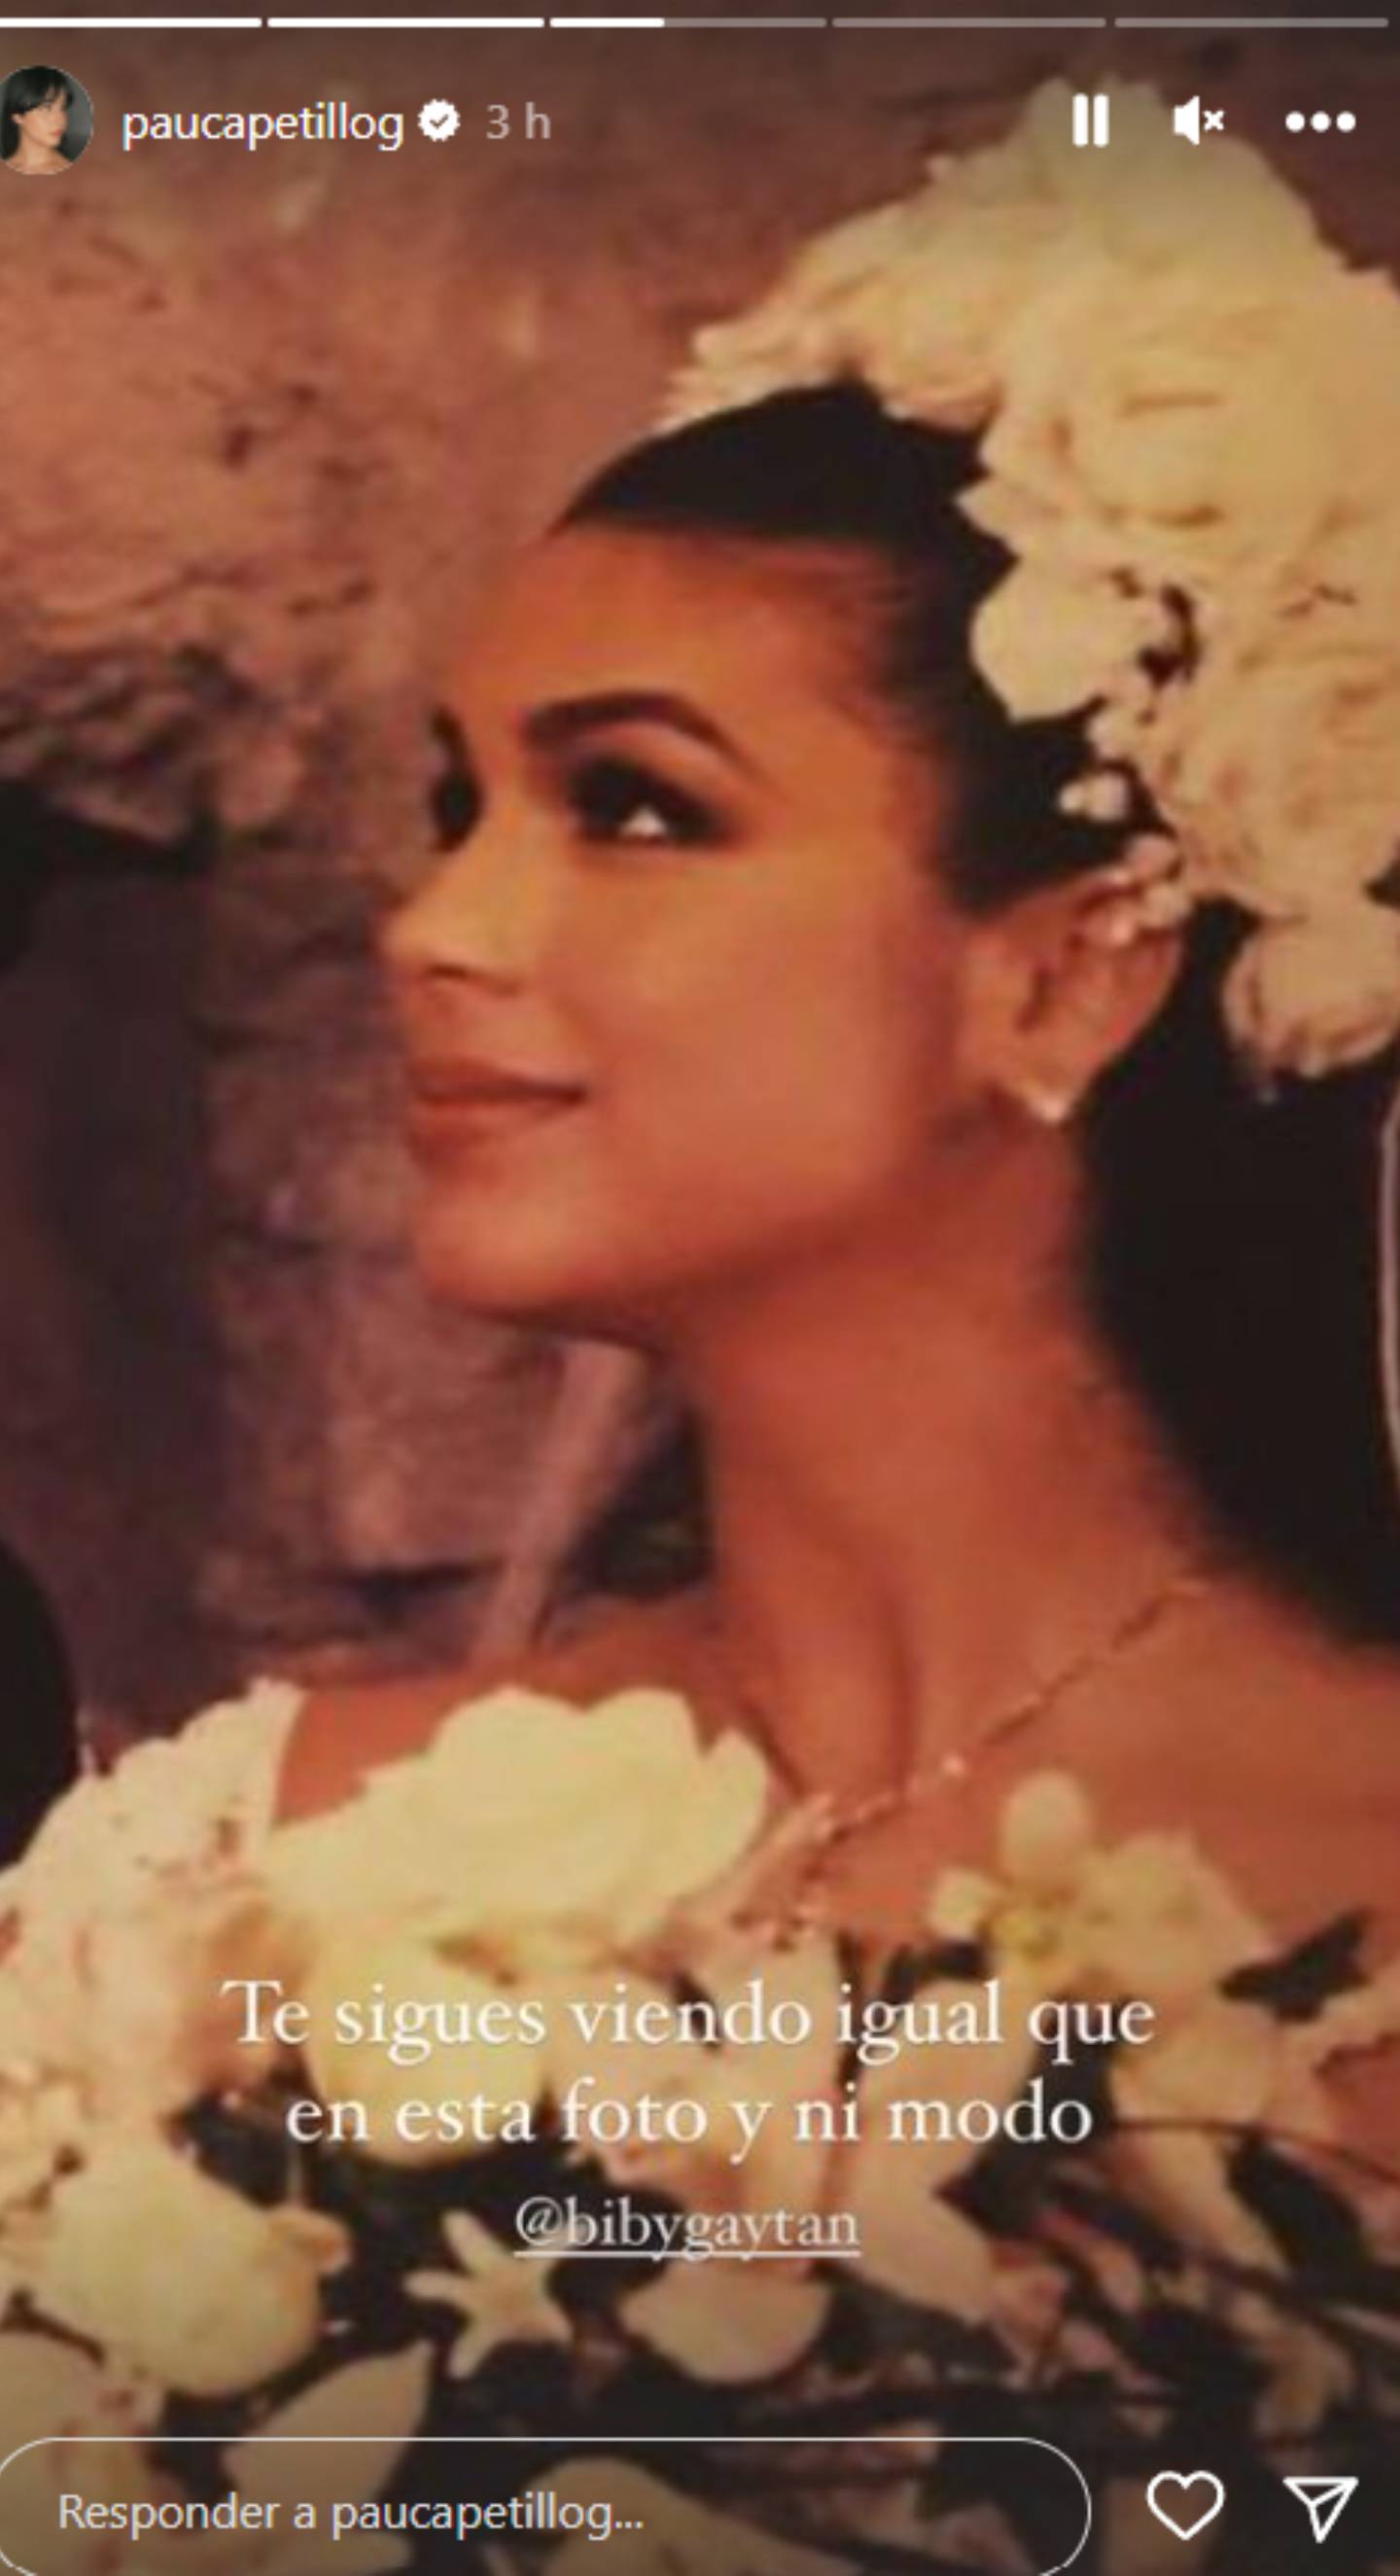 La hija de Biby Gaytán compartió una foto inédita del día de su boda con Capetillo